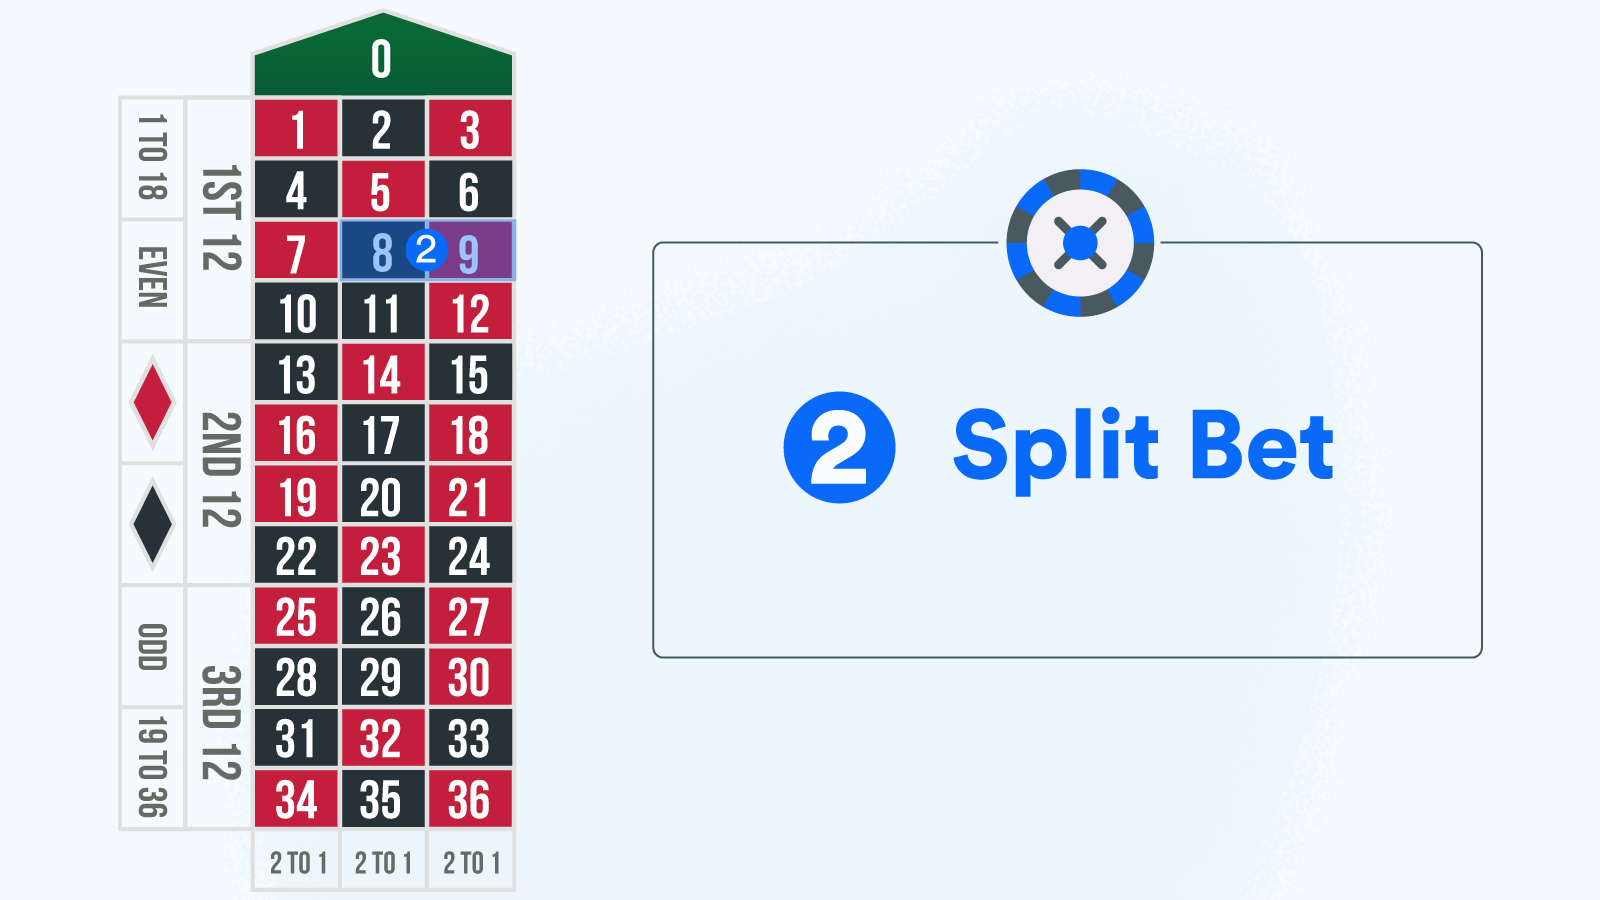 Split Bet